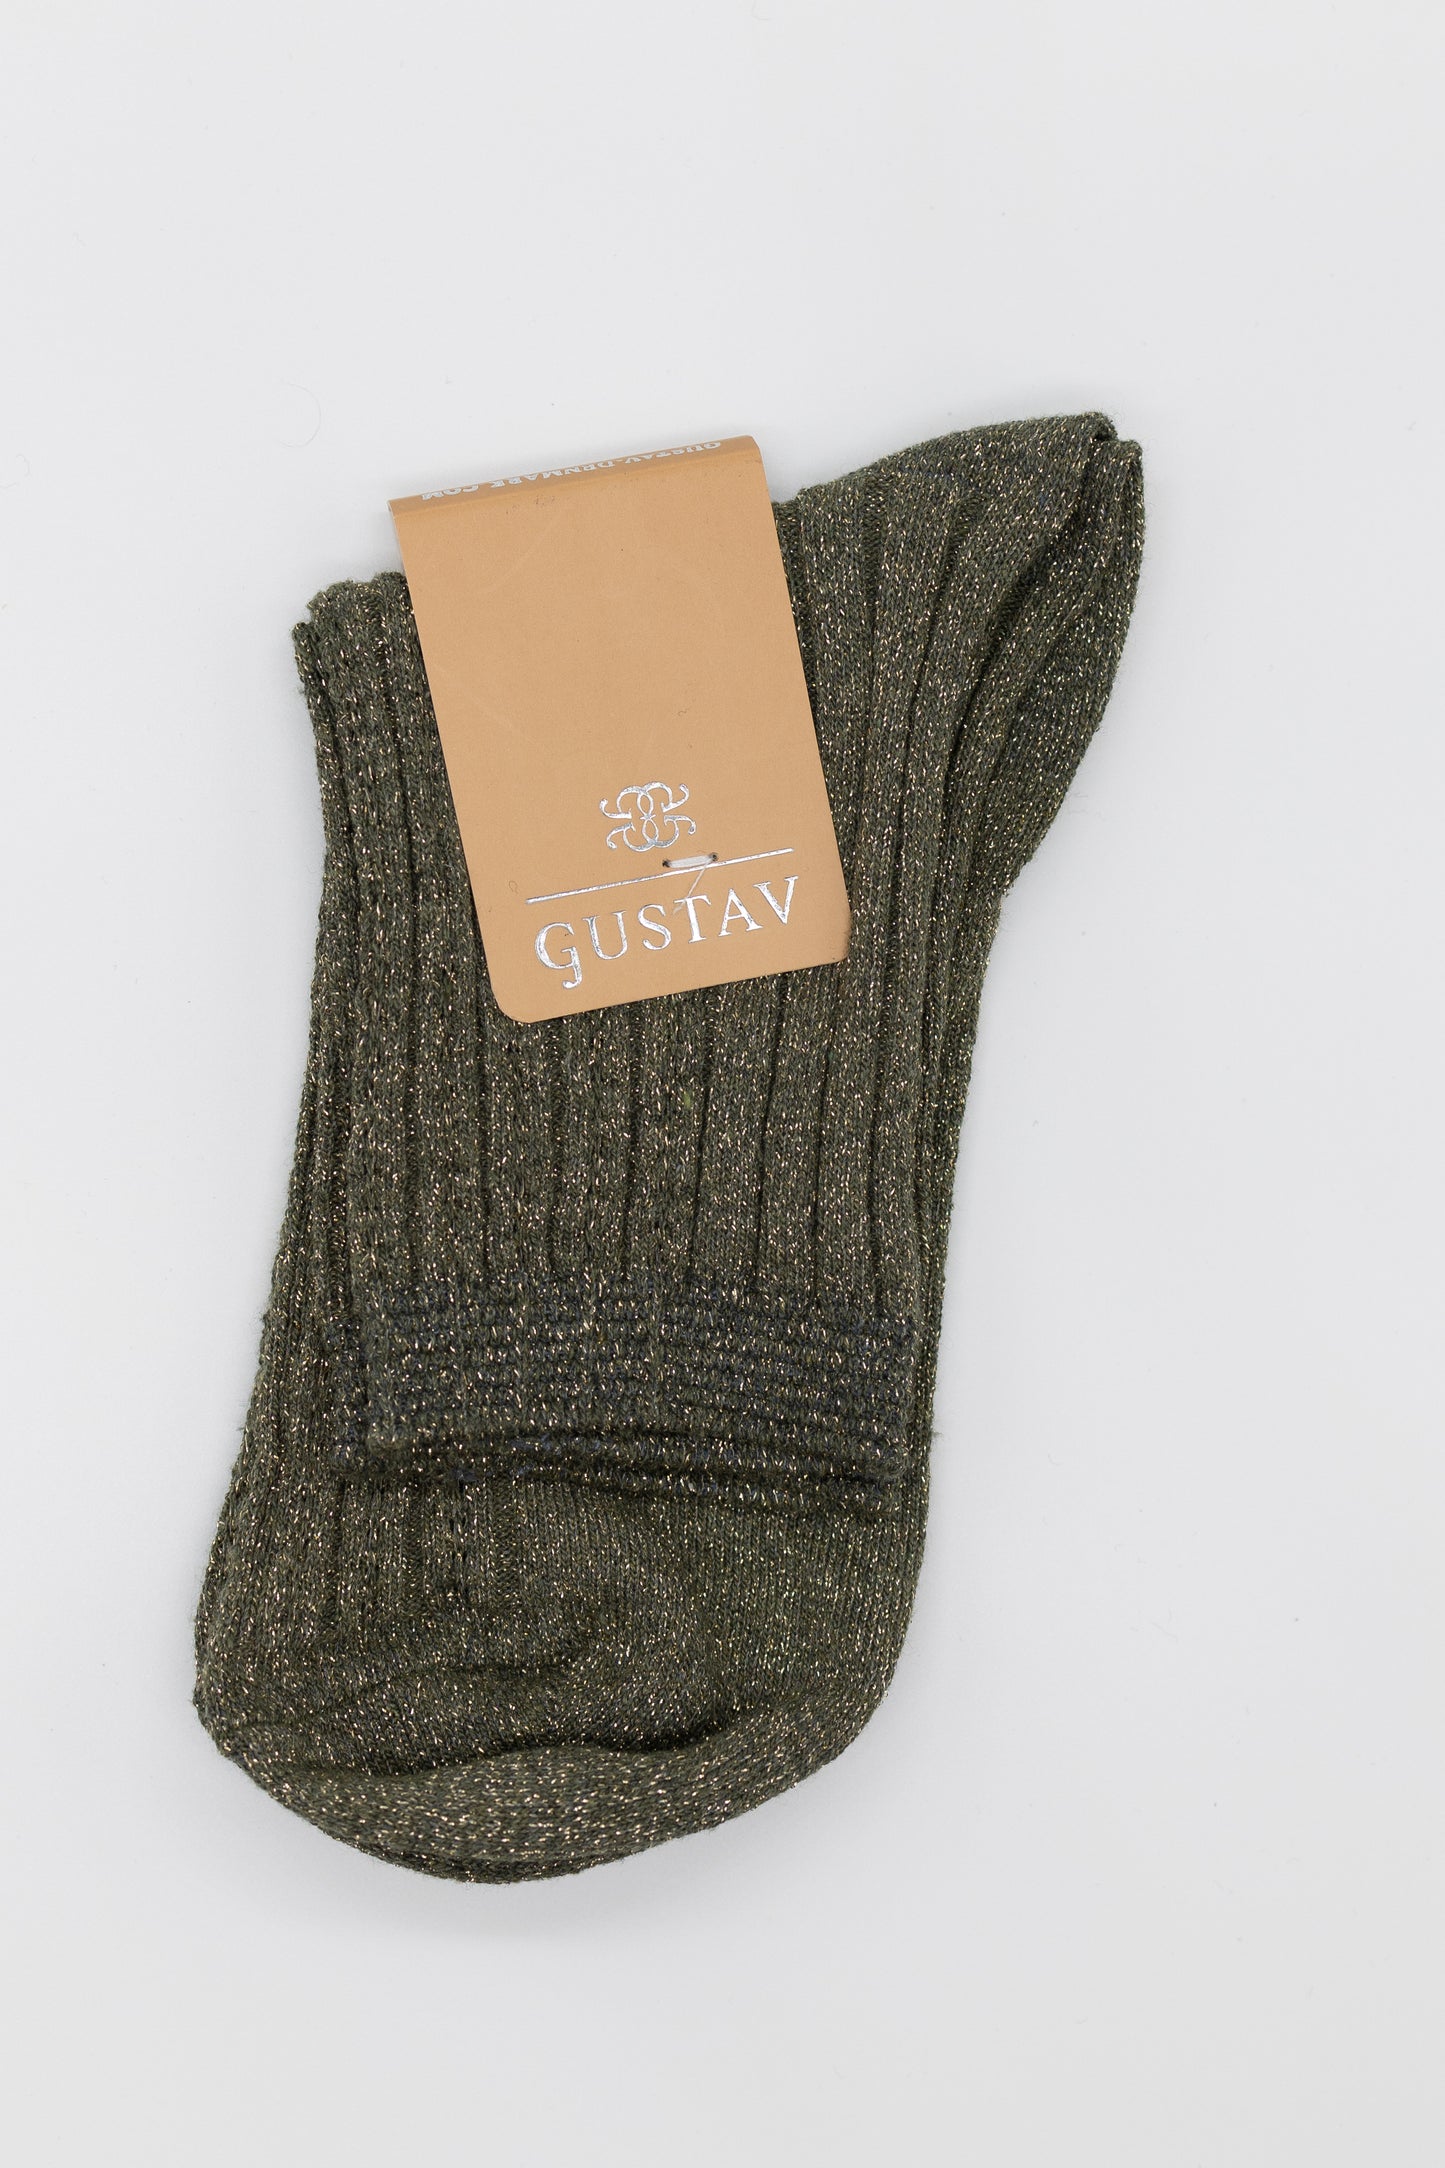 Gustav Lurex Socks